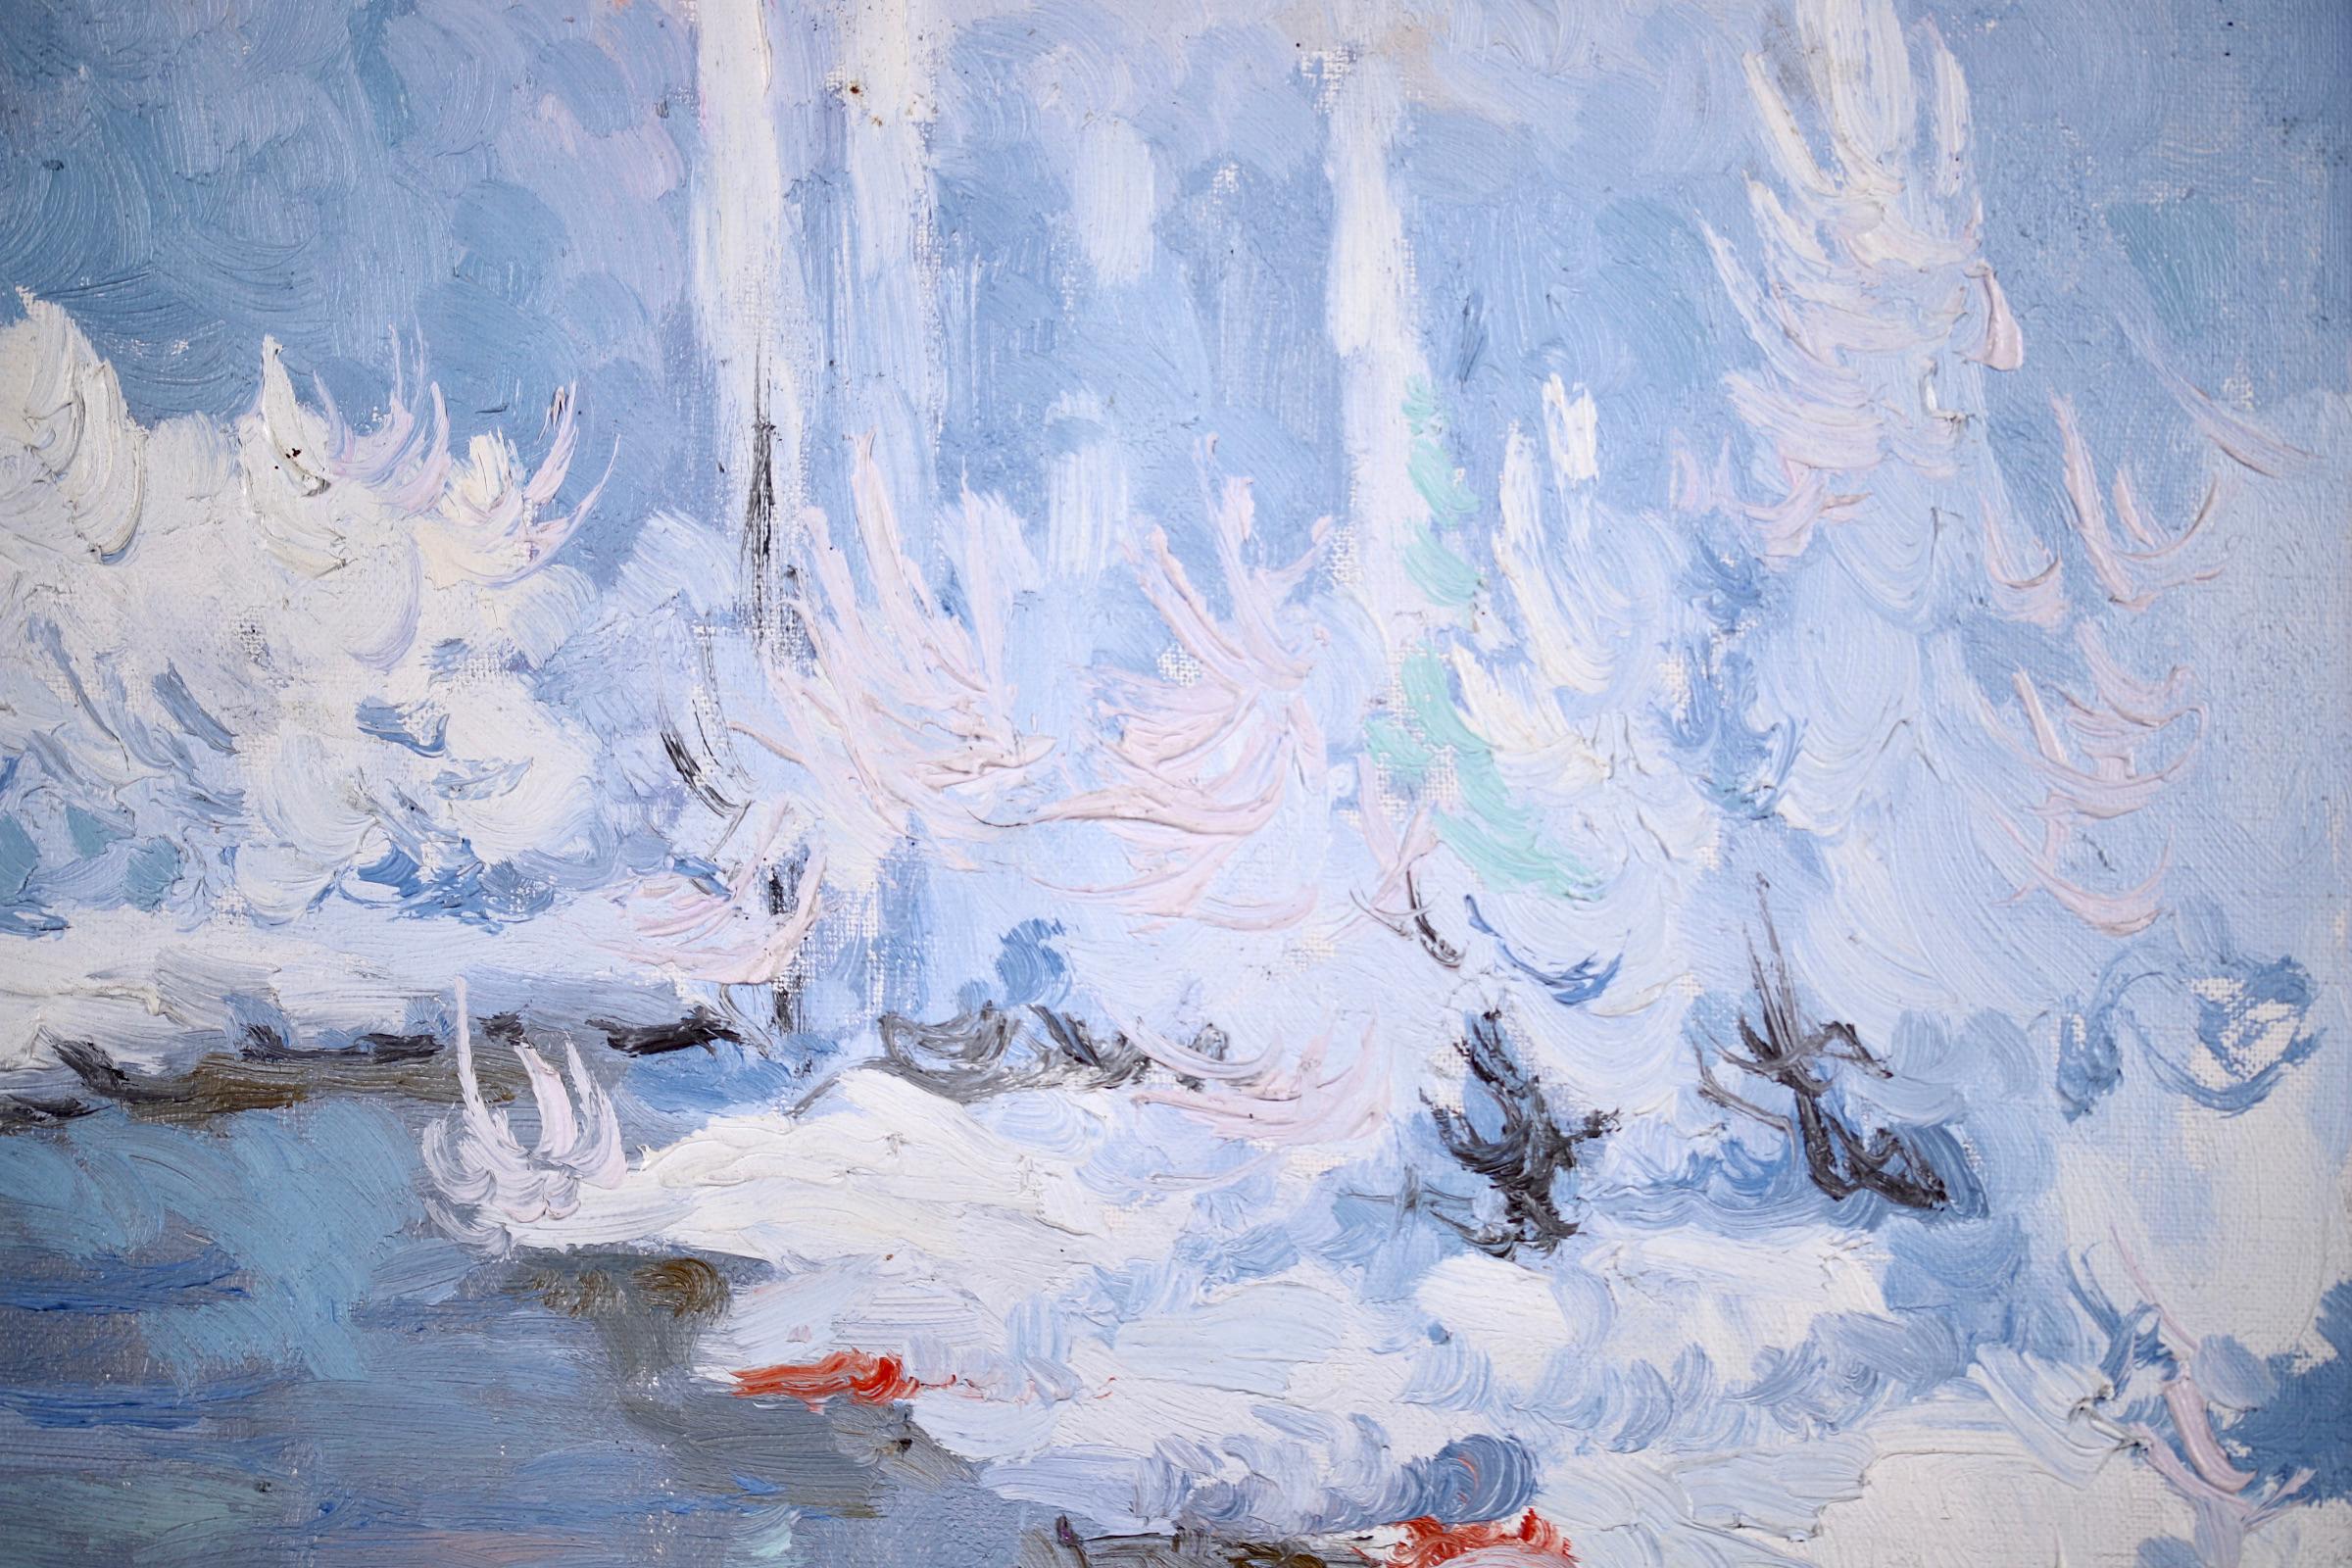 Coucher de Soleil - Hiver - Post Impressionist Oil, Snowy Riverscape by Altmann - Post-Impressionist Painting by Alexandre Altmann